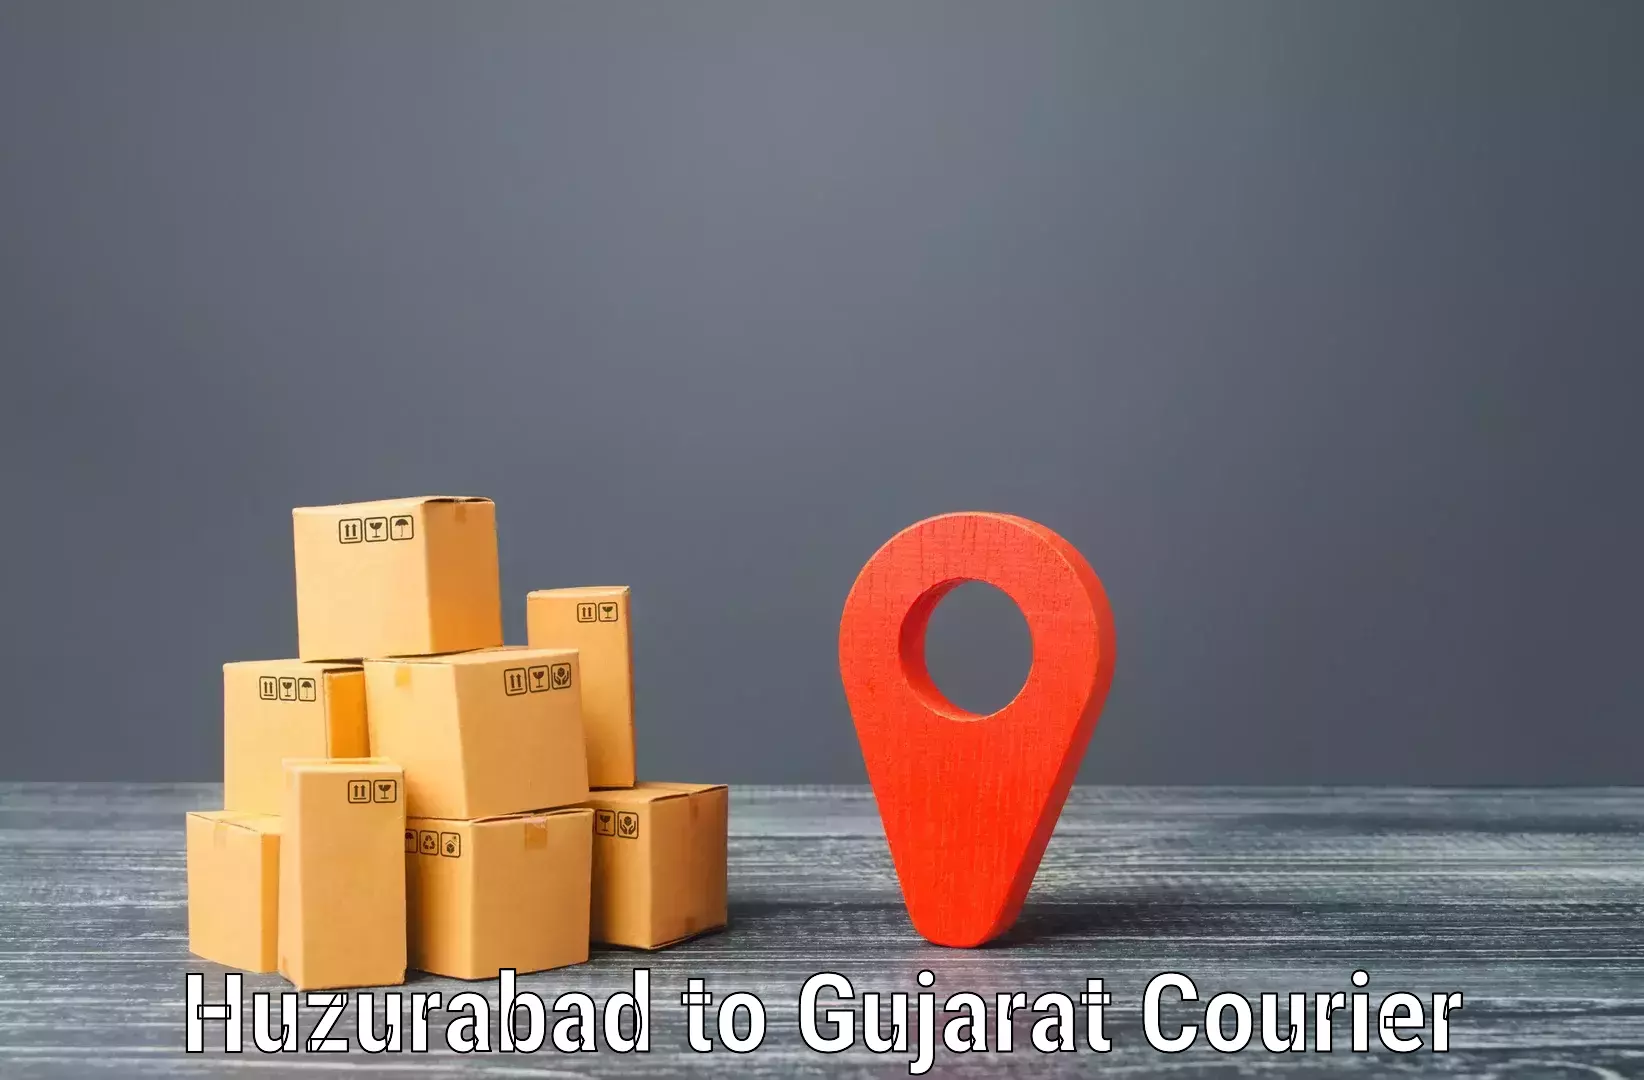 Doorstep delivery service Huzurabad to Kadodara